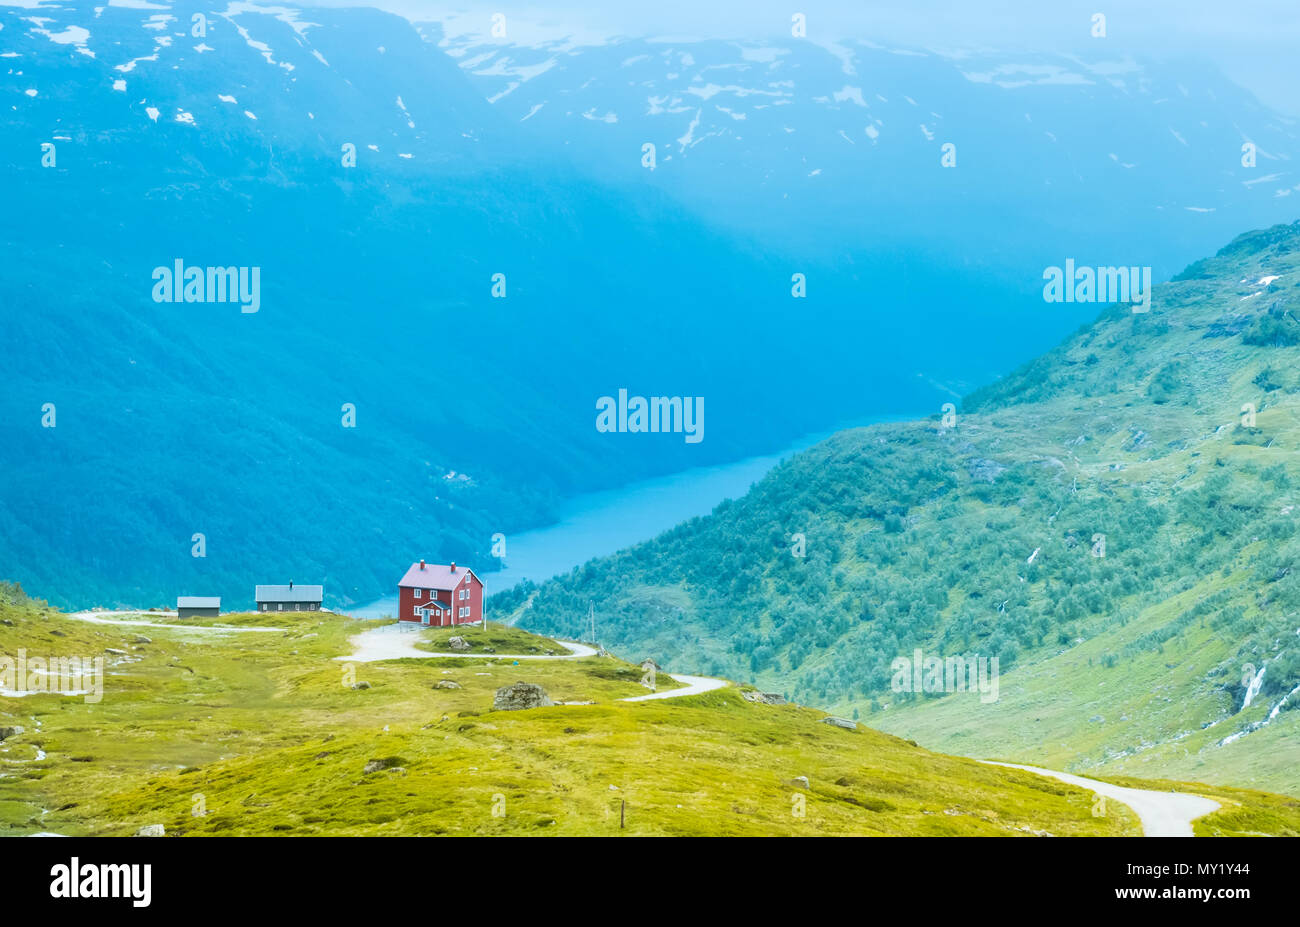 La maison solitaire sur lac de montagne en Norvège Banque D'Images